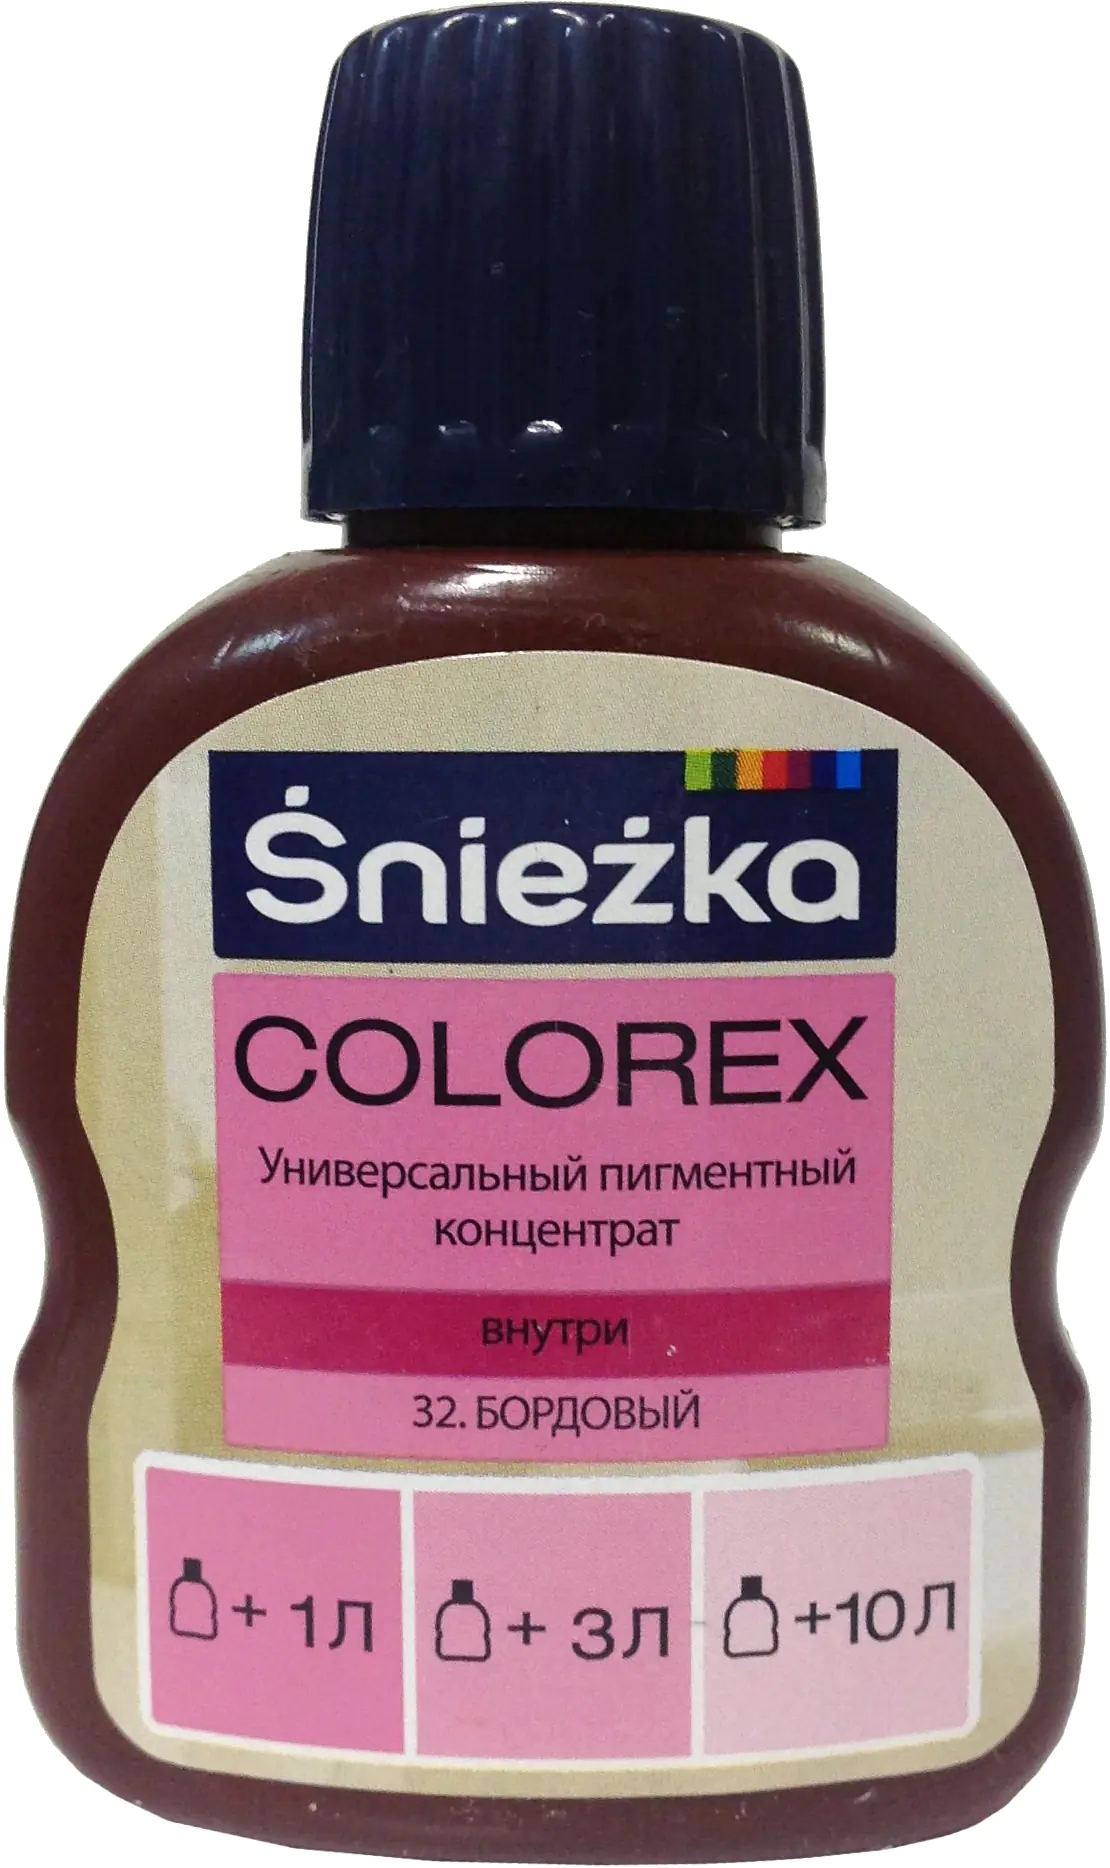 Колер Sniezka Colorex №32. Бордовый. 100 мл. Польша.